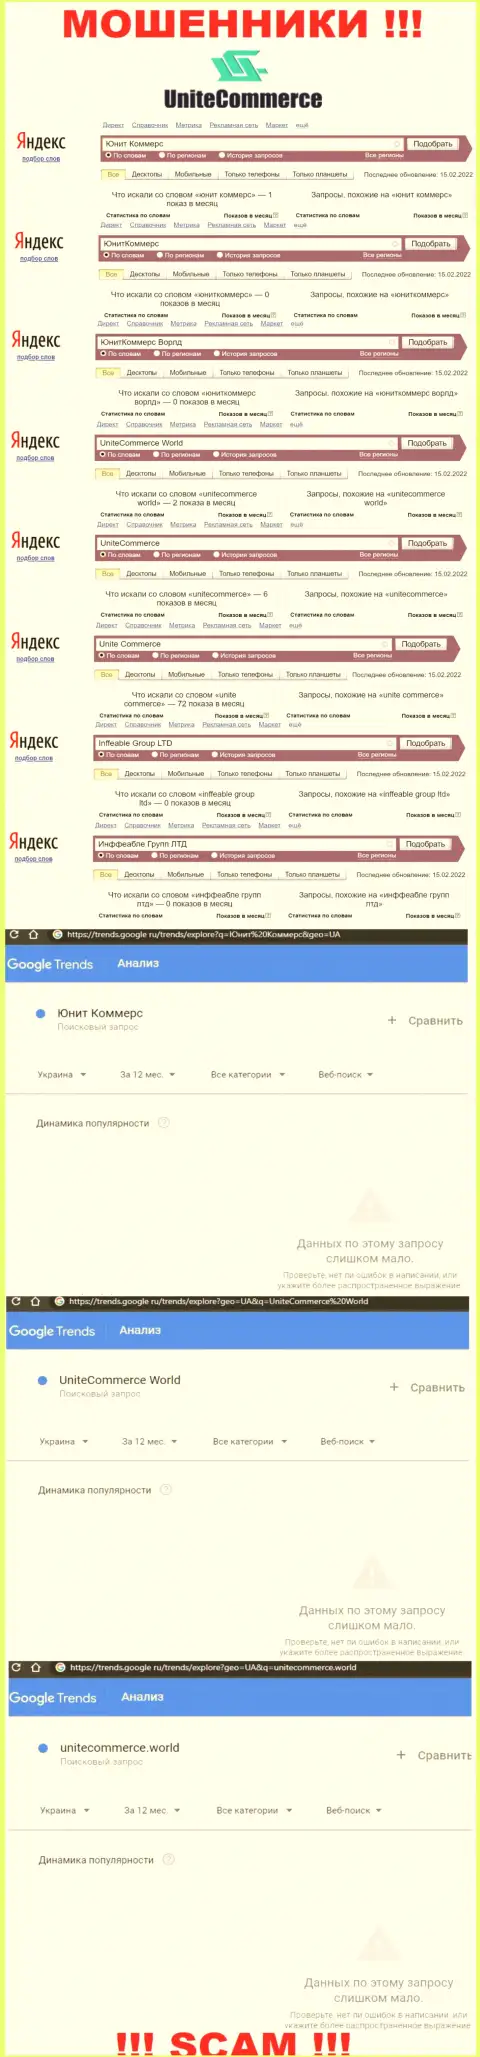 Показатели online-запросов по бренду мошенников ЮнитКоммерс Ворлд